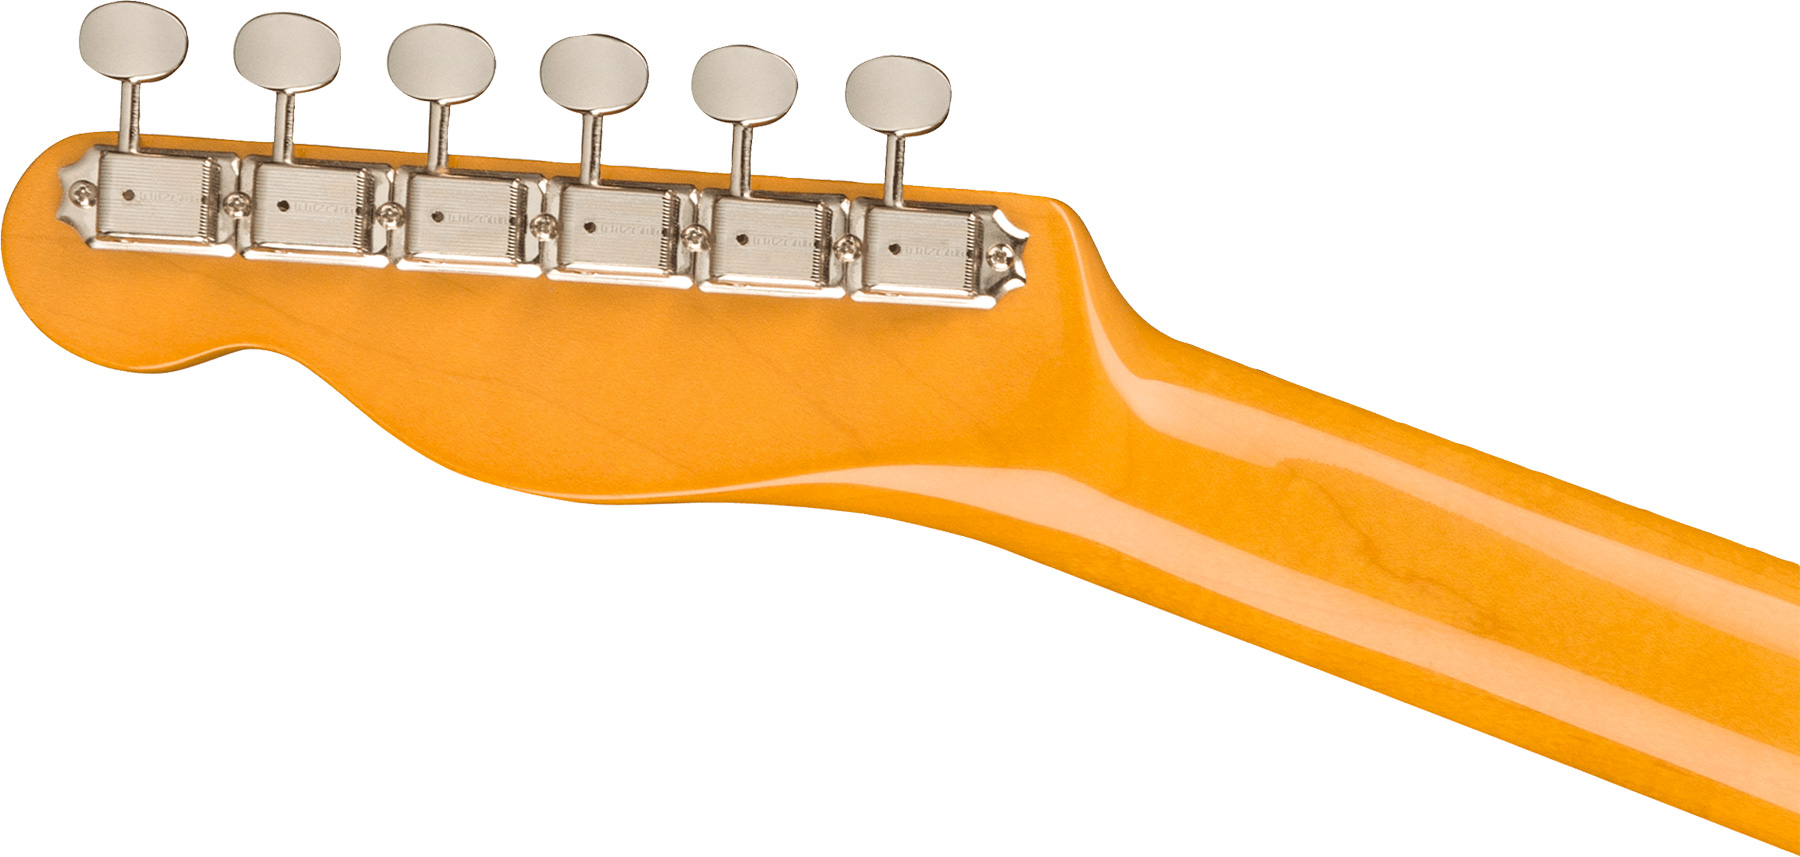 Fender Tele 1963 American Vintage Ii Usa 2s Ht Rw - 3-color Sunburst - Guitarra eléctrica con forma de tel - Variation 3